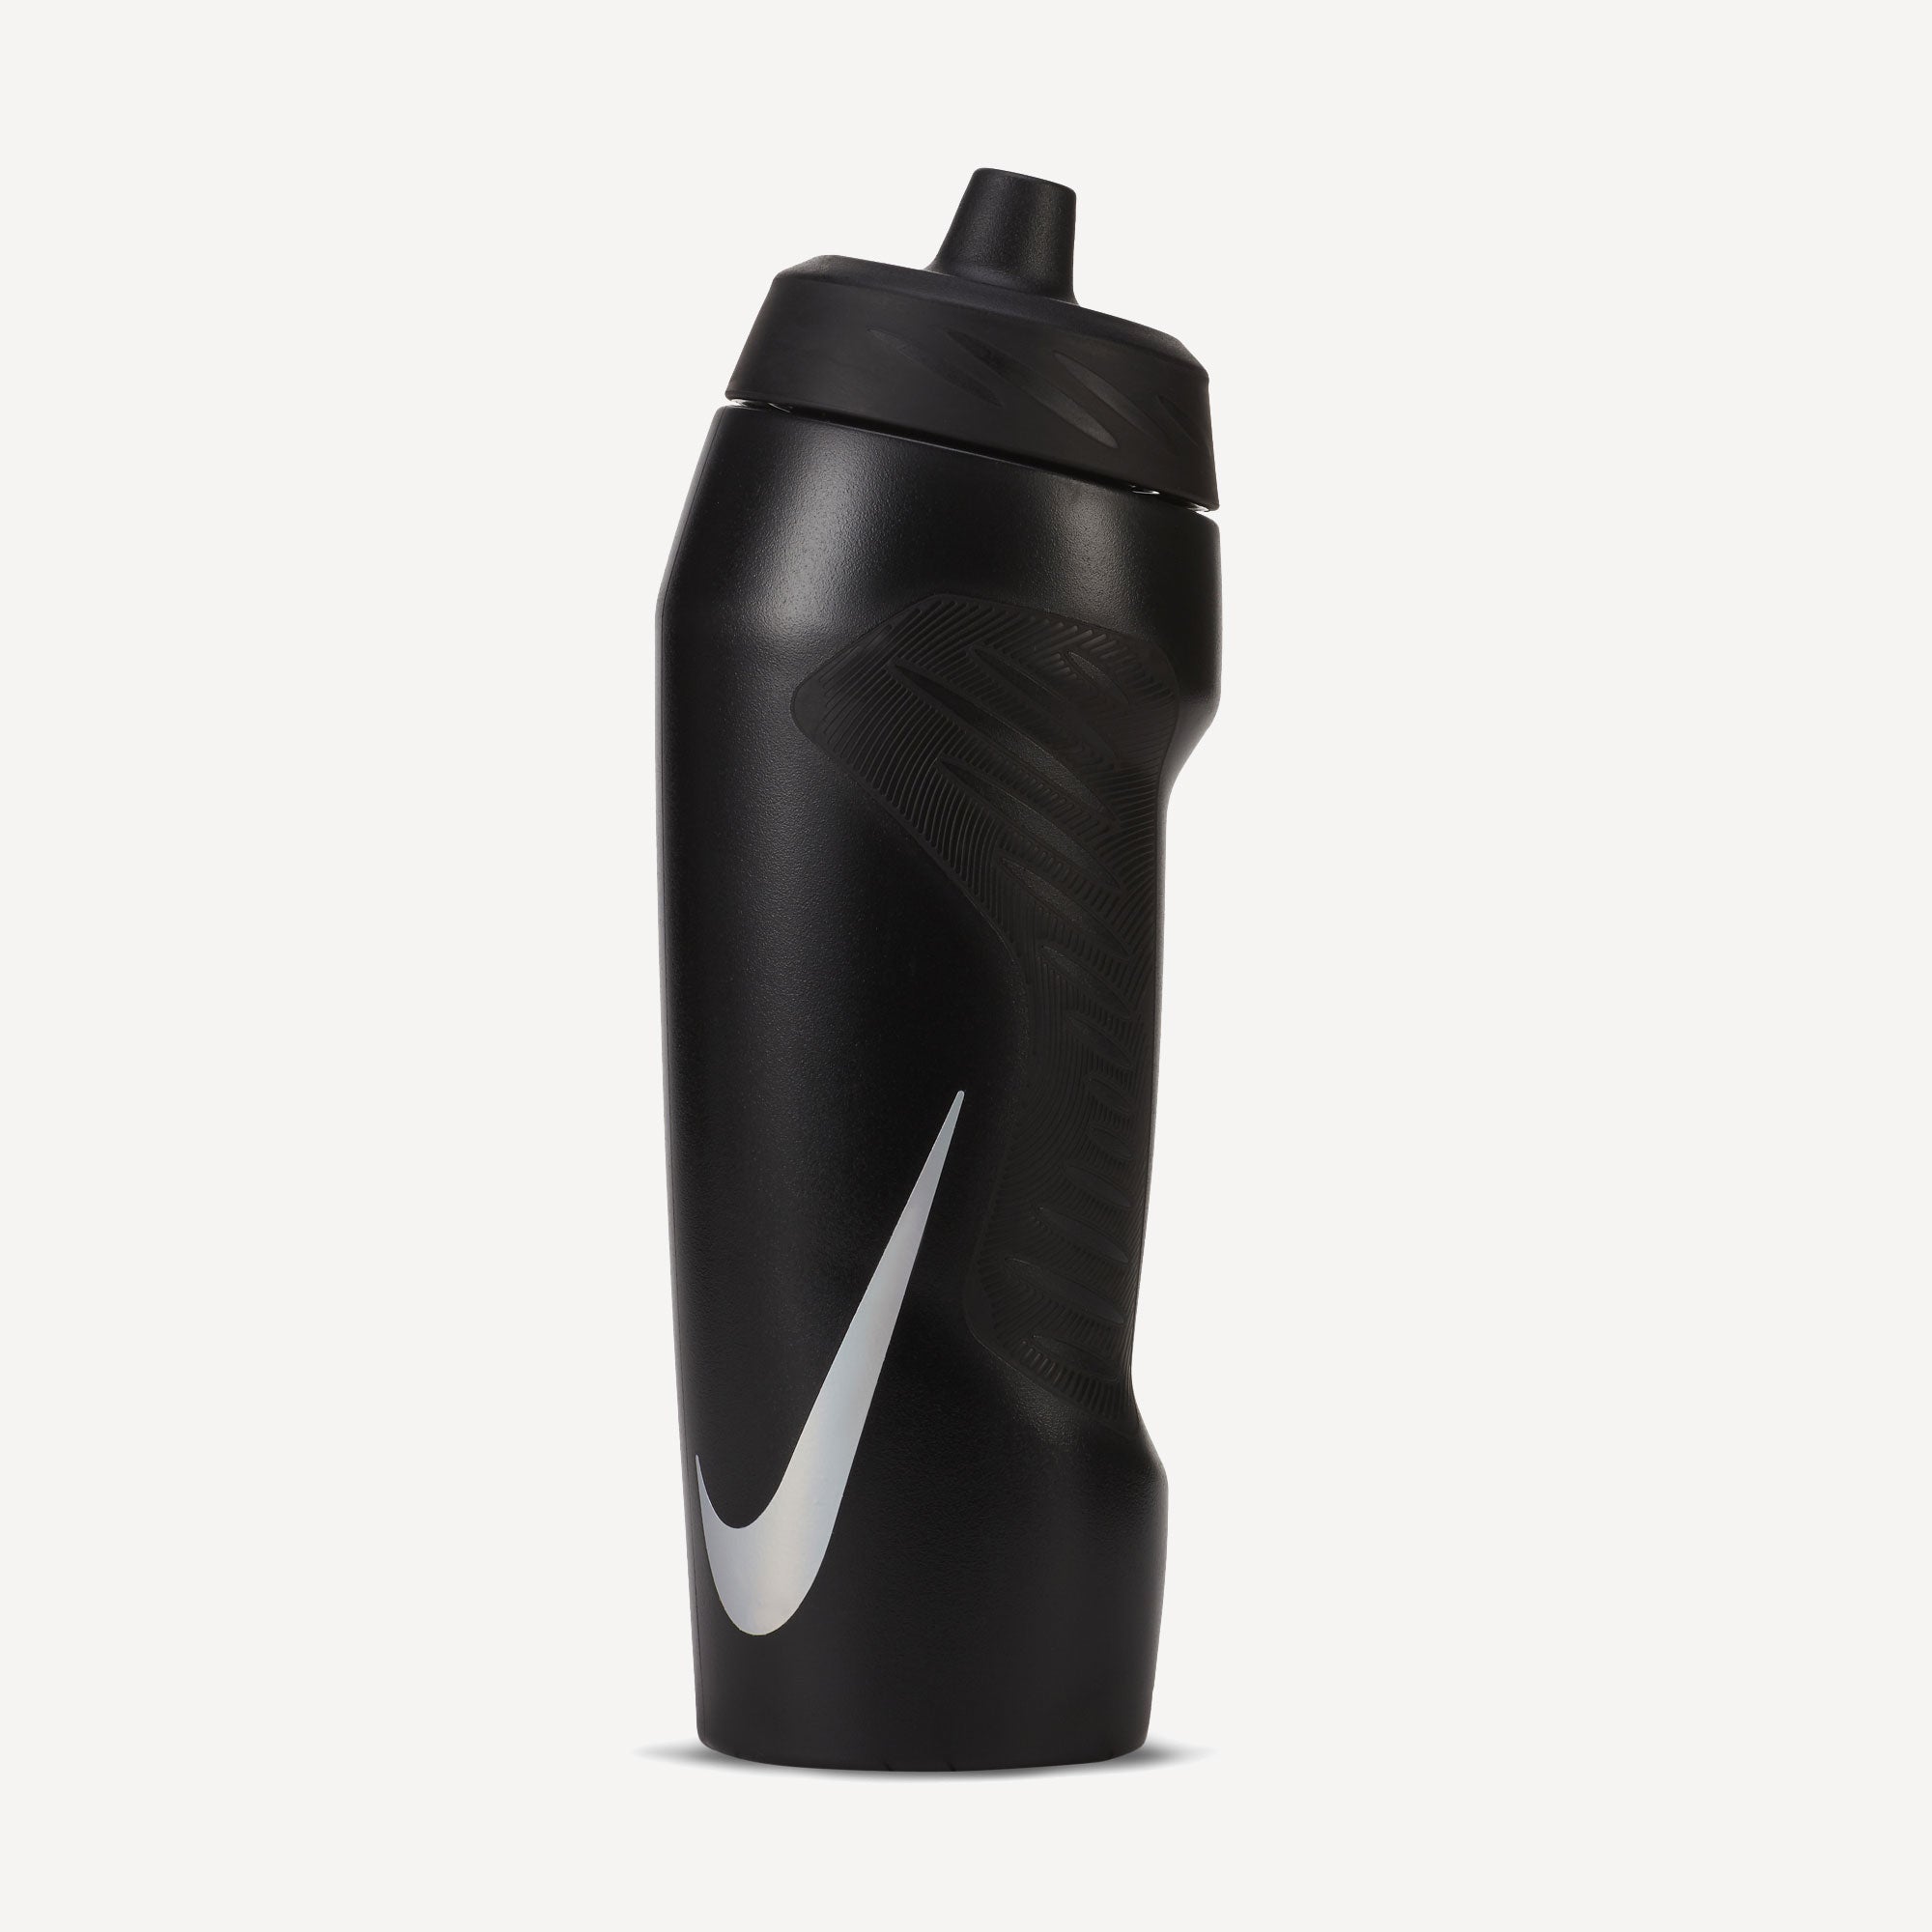 Nike Hyperfuel Bottle 710ml 1